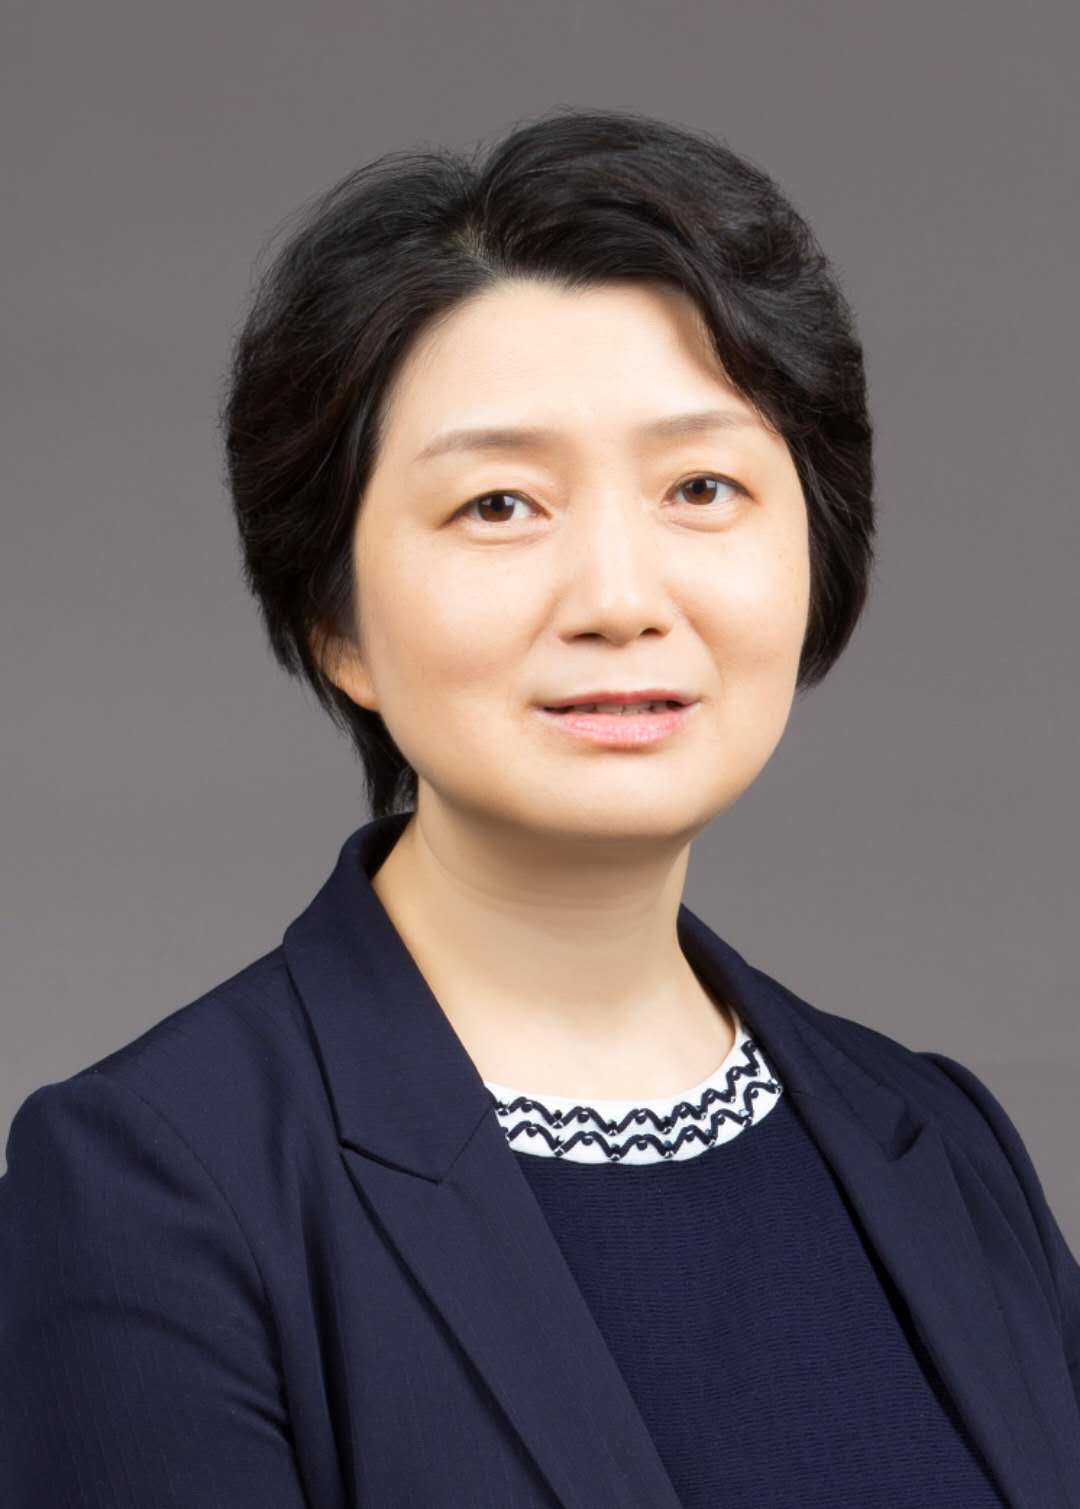 Ms Zhiqin Wang